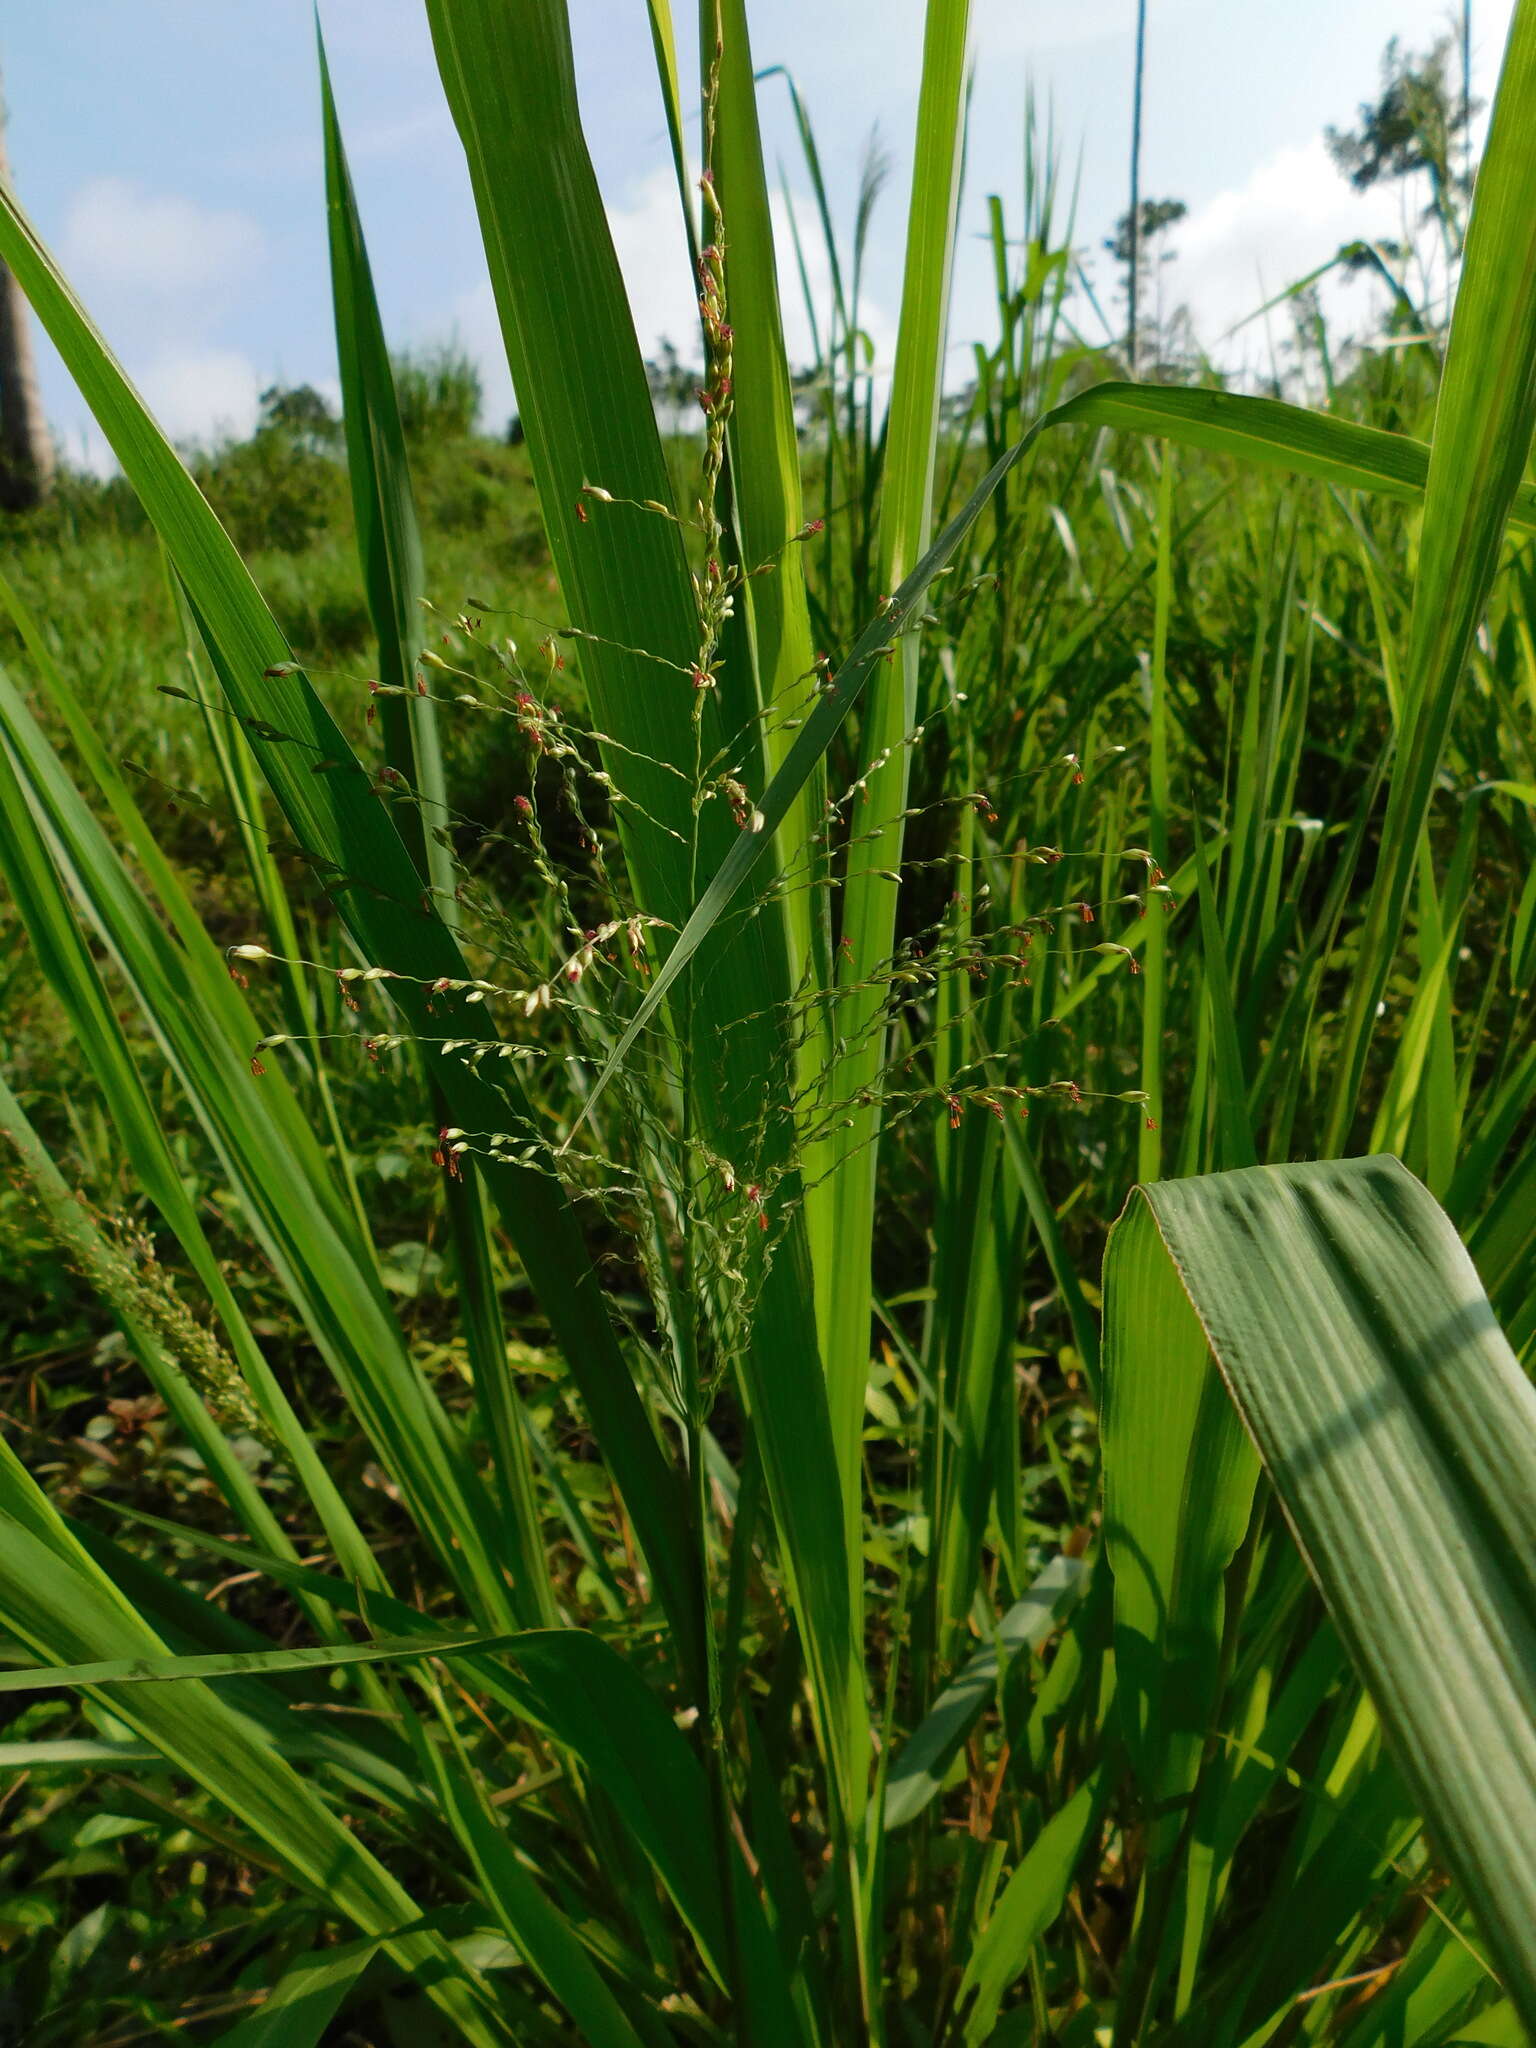 Image of kleingrass